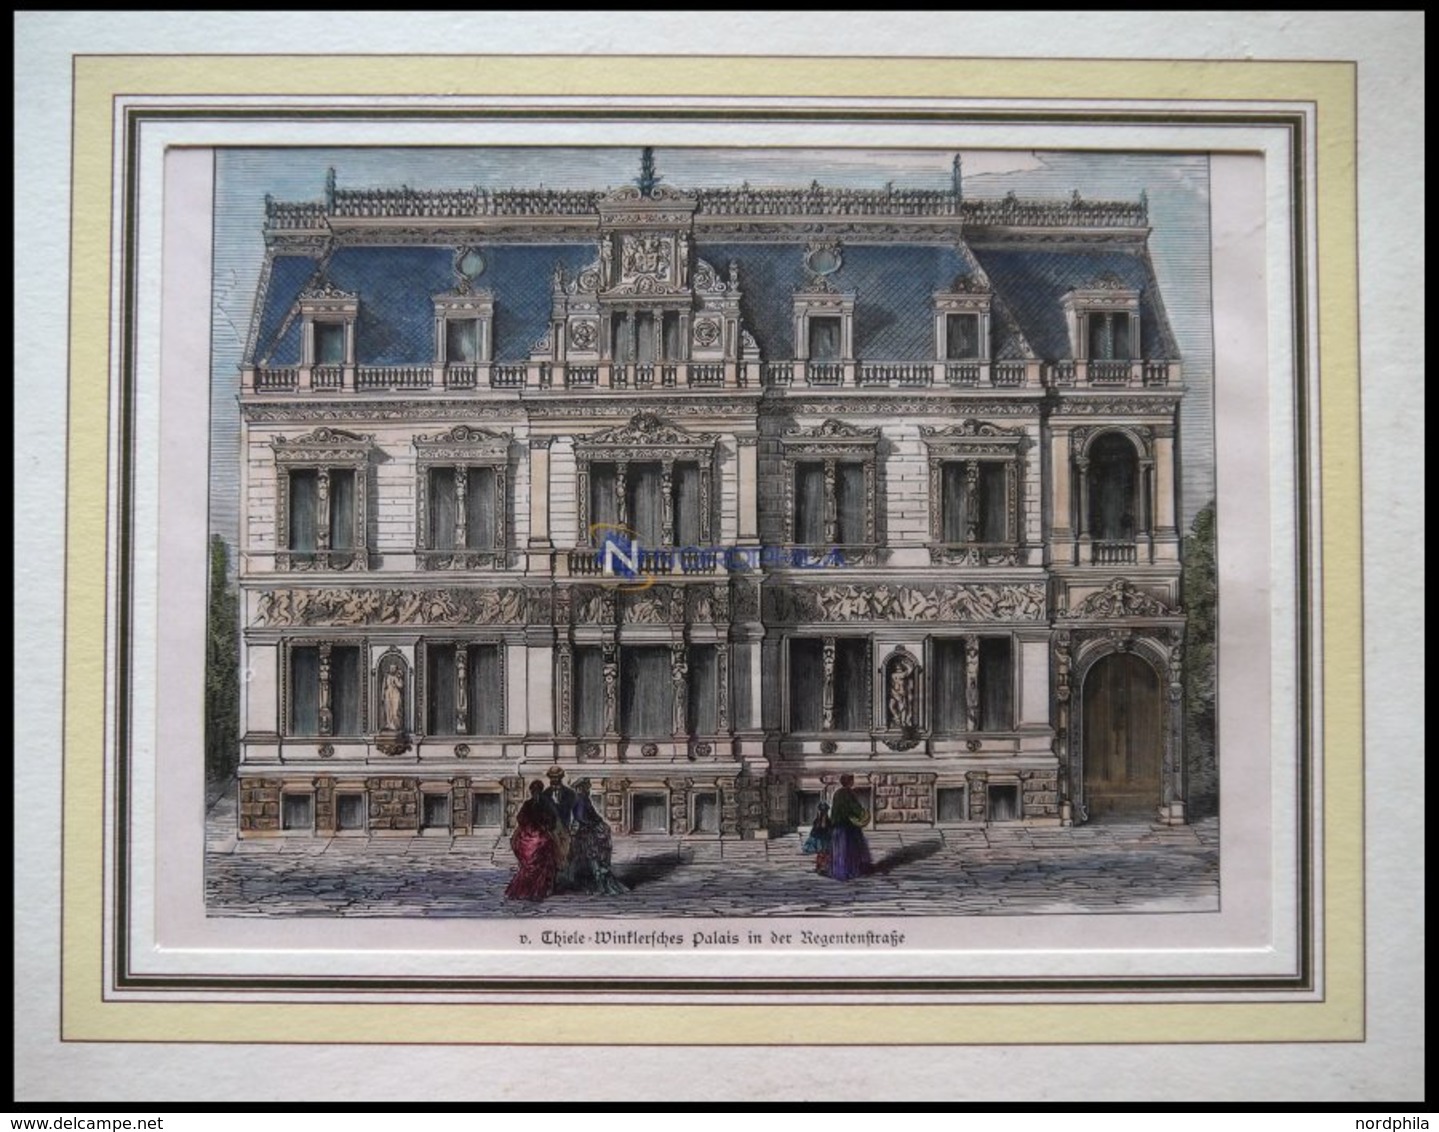 BERLIN: V.Thiele-Winklersches Palais In Der Regentstraße, Kolorierter Holzstich Um 1880 - Litografía